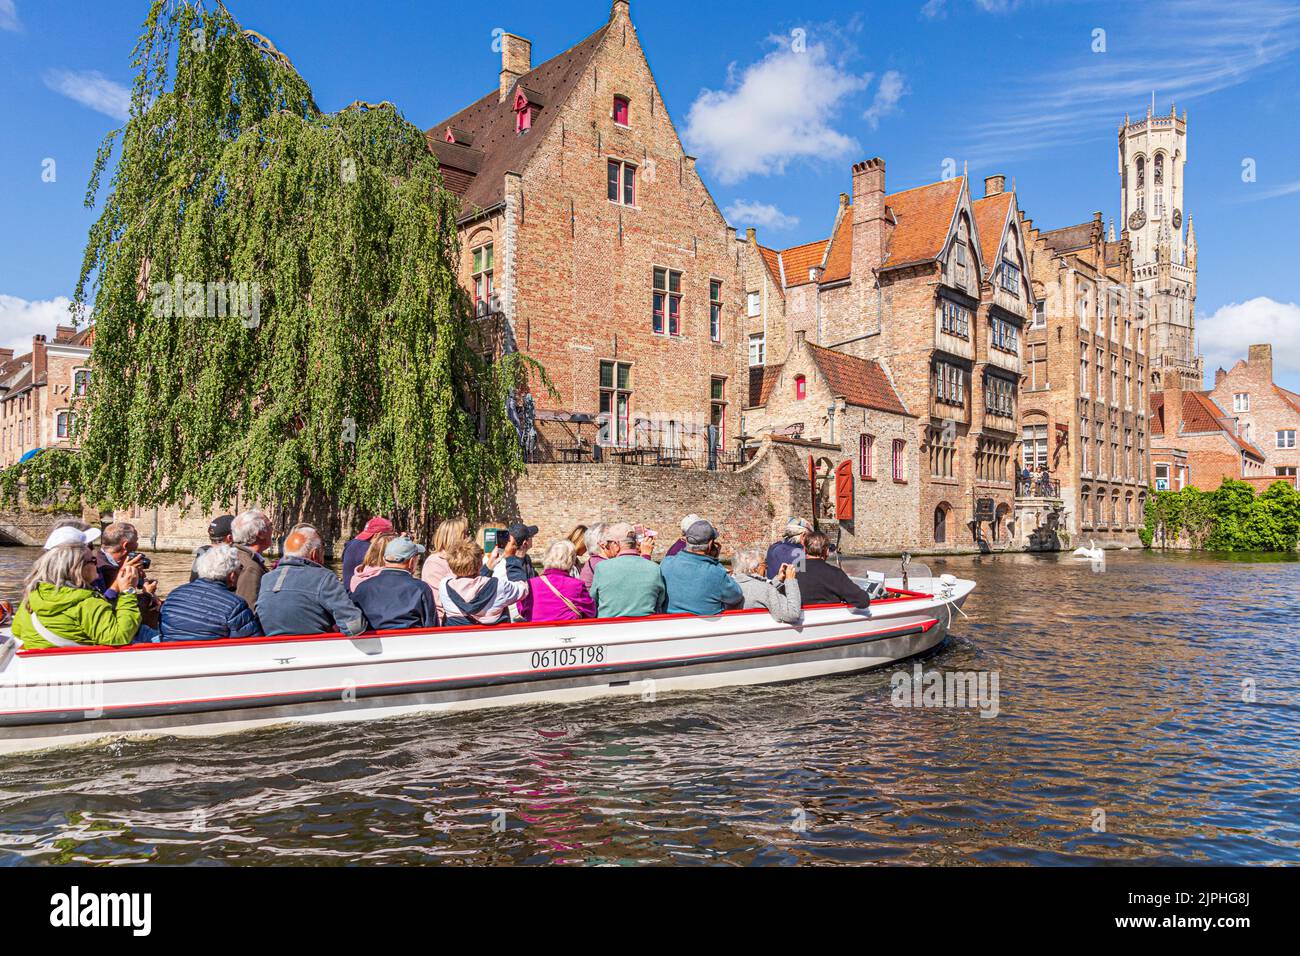 Los turistas disfrutan de una visita guiada en barco por los canales de Brujas, Bélgica Foto de stock